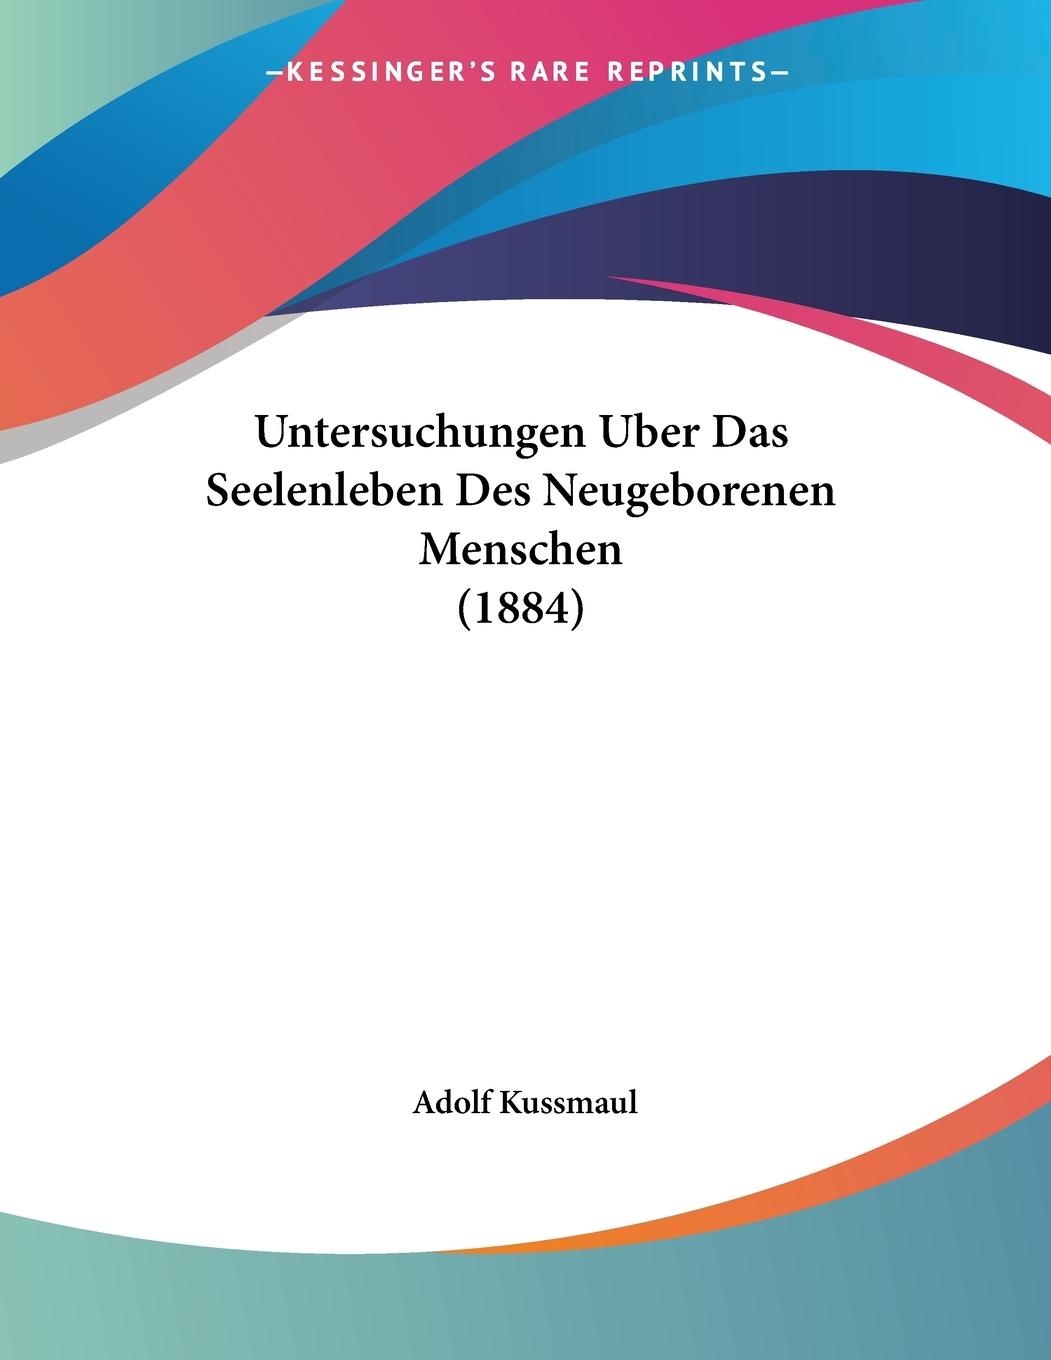 Untersuchungen Uber Das Seelenleben Des Neugeborenen Menschen (1884) - Kussmaul, Adolf